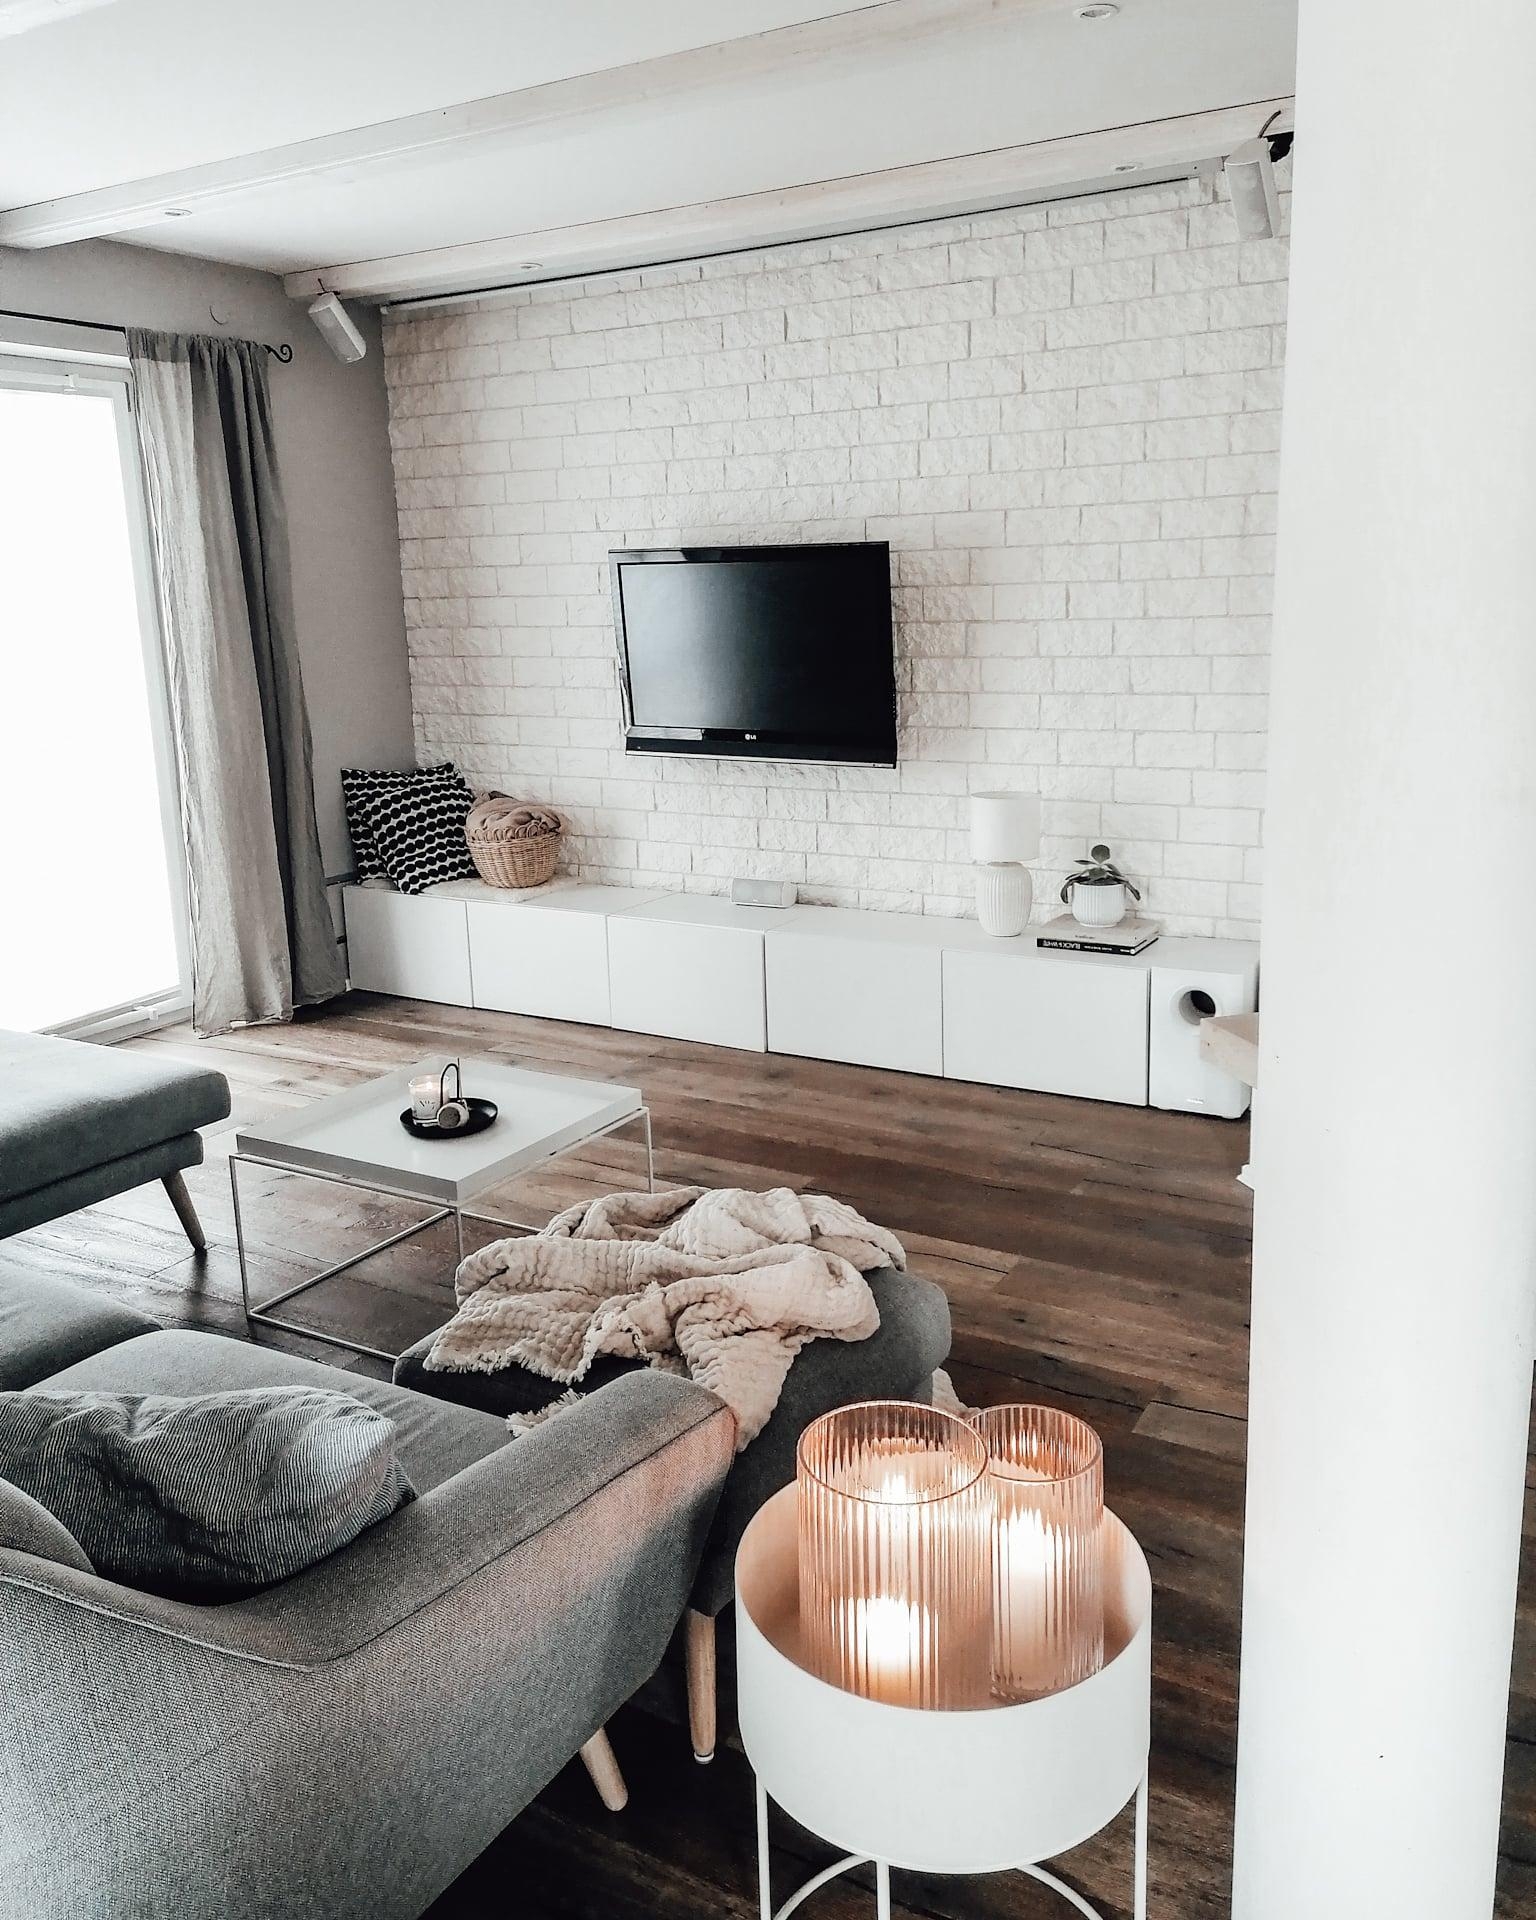 #skandinavischwohnen #couchmagazin #couchstyle #nordicinspiration #nordicliving #scandilovers #inspo #wohnzimmer